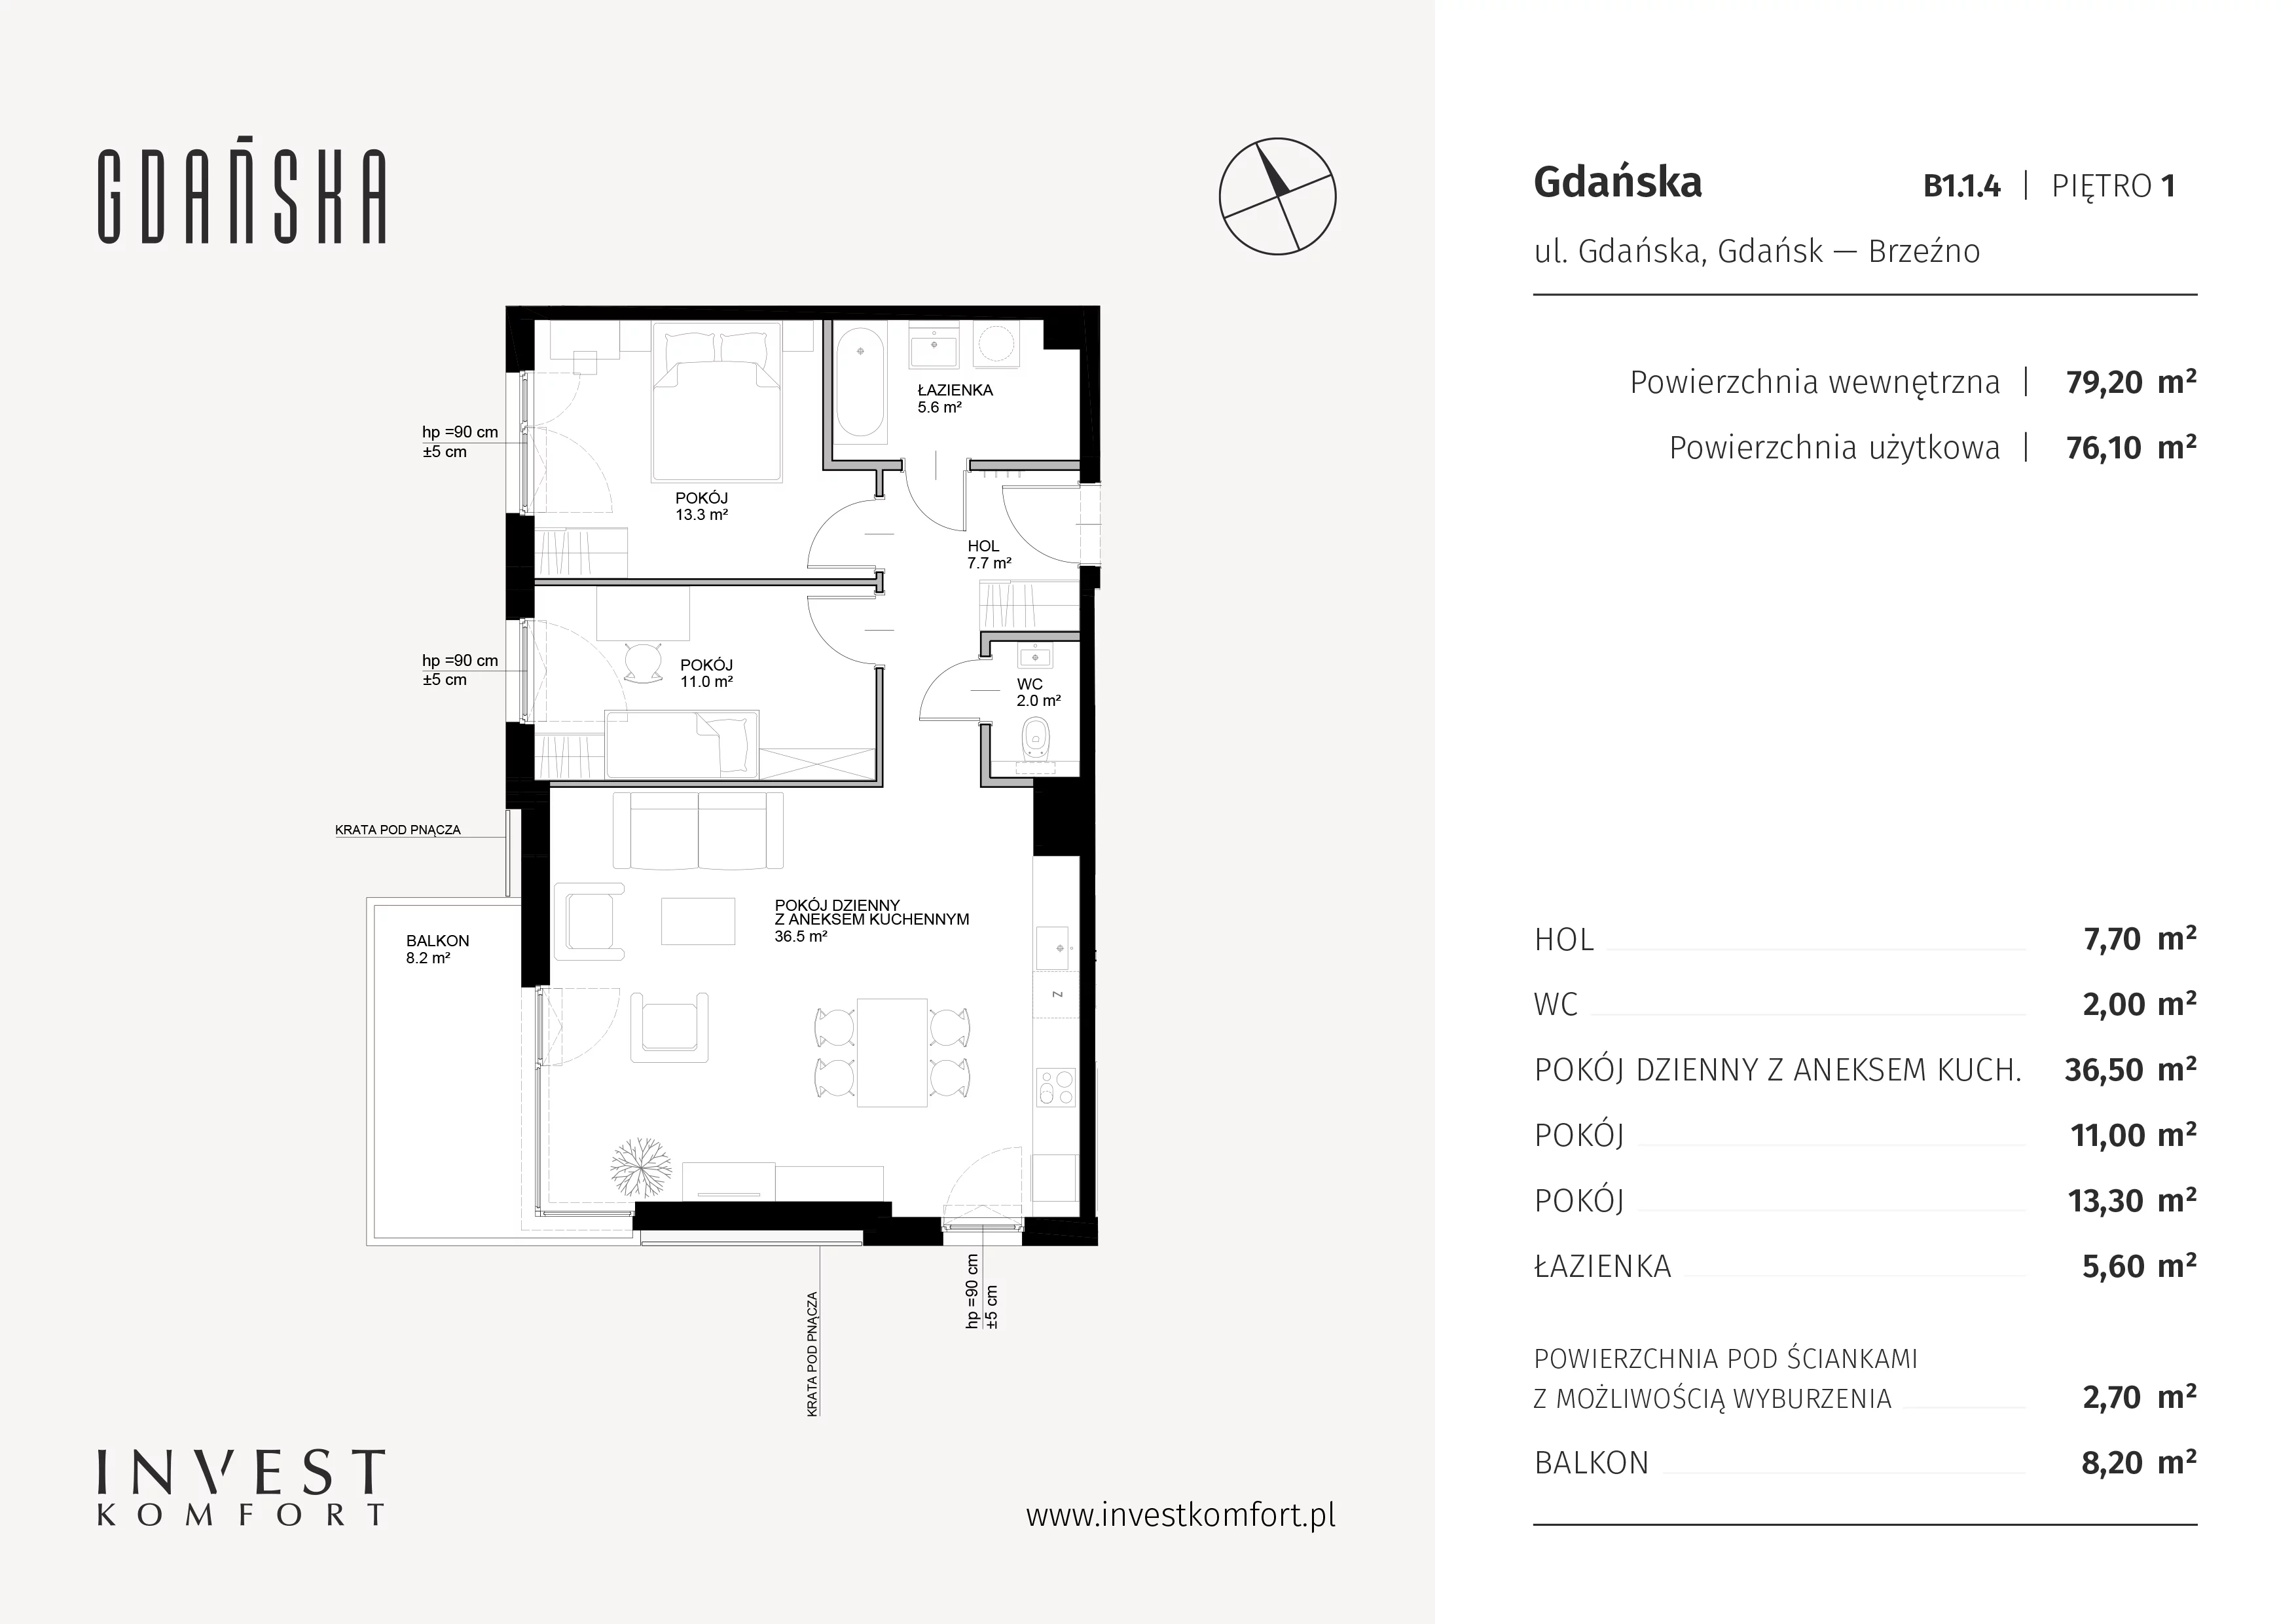 Mieszkanie 79,20 m², piętro 1, oferta nr B1.1.4, Gdańska, Gdańsk, Brzeźno, ul. Gdańska